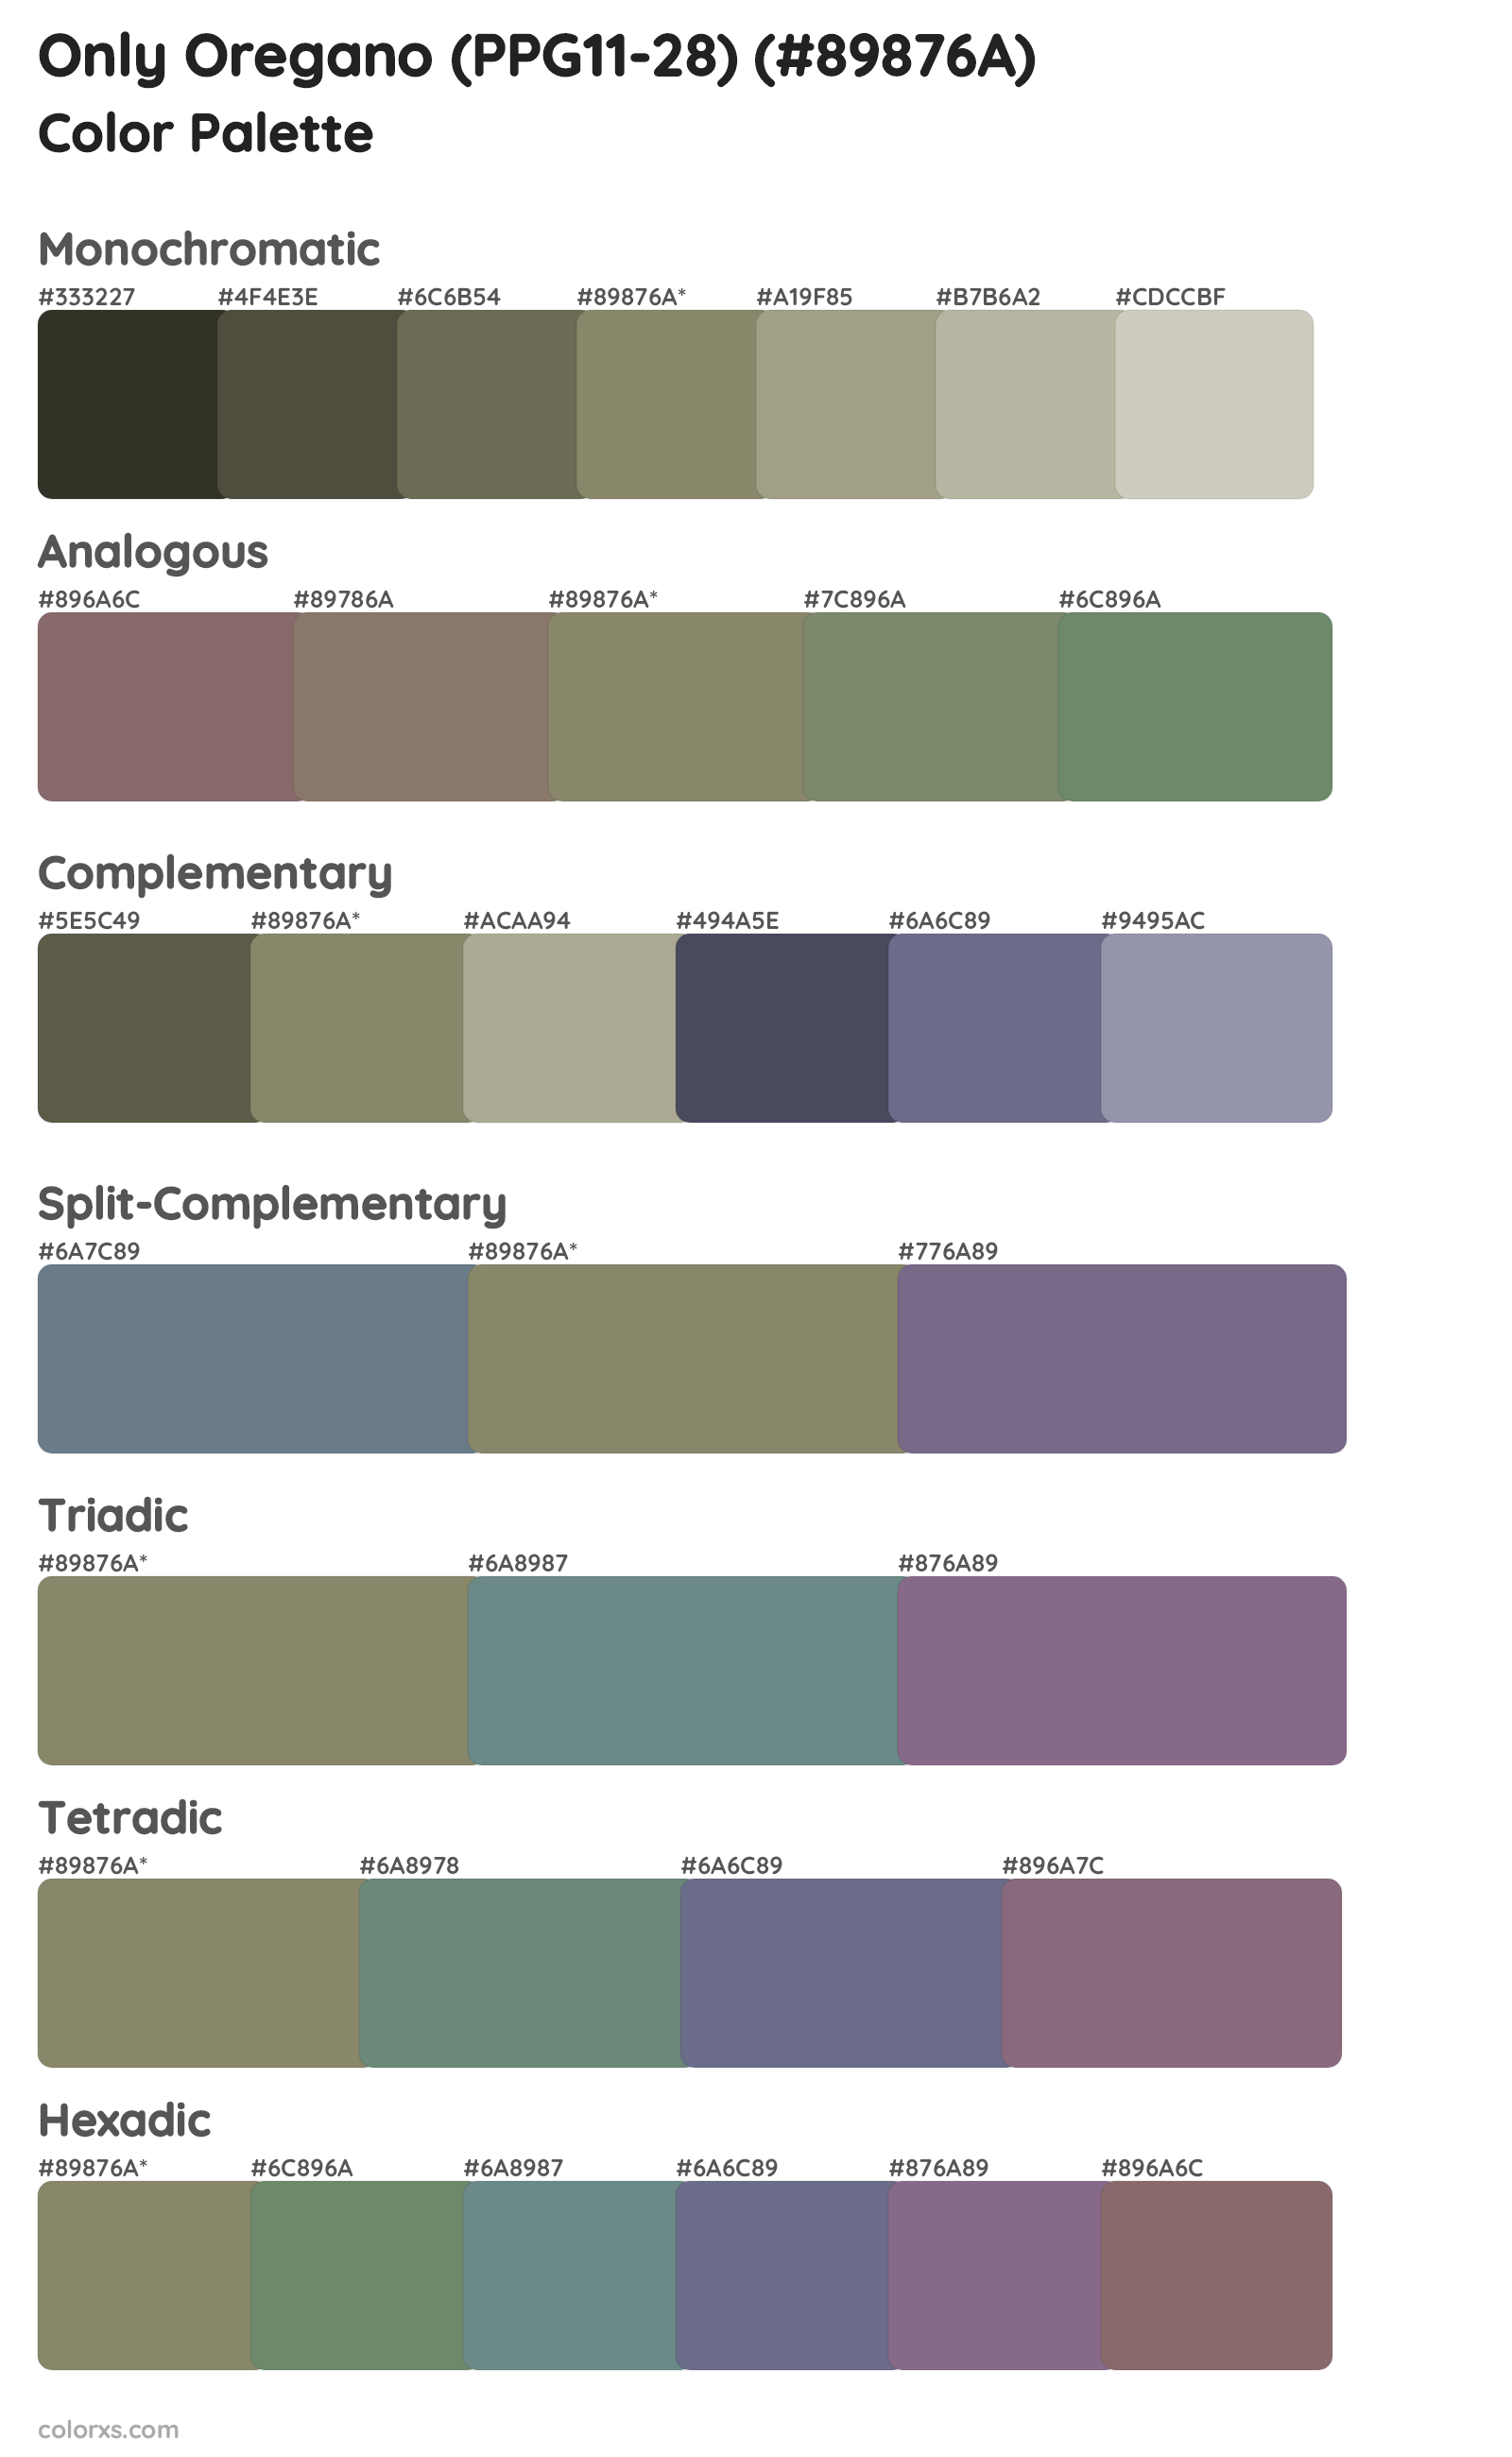 Only Oregano (PPG11-28) Color Scheme Palettes